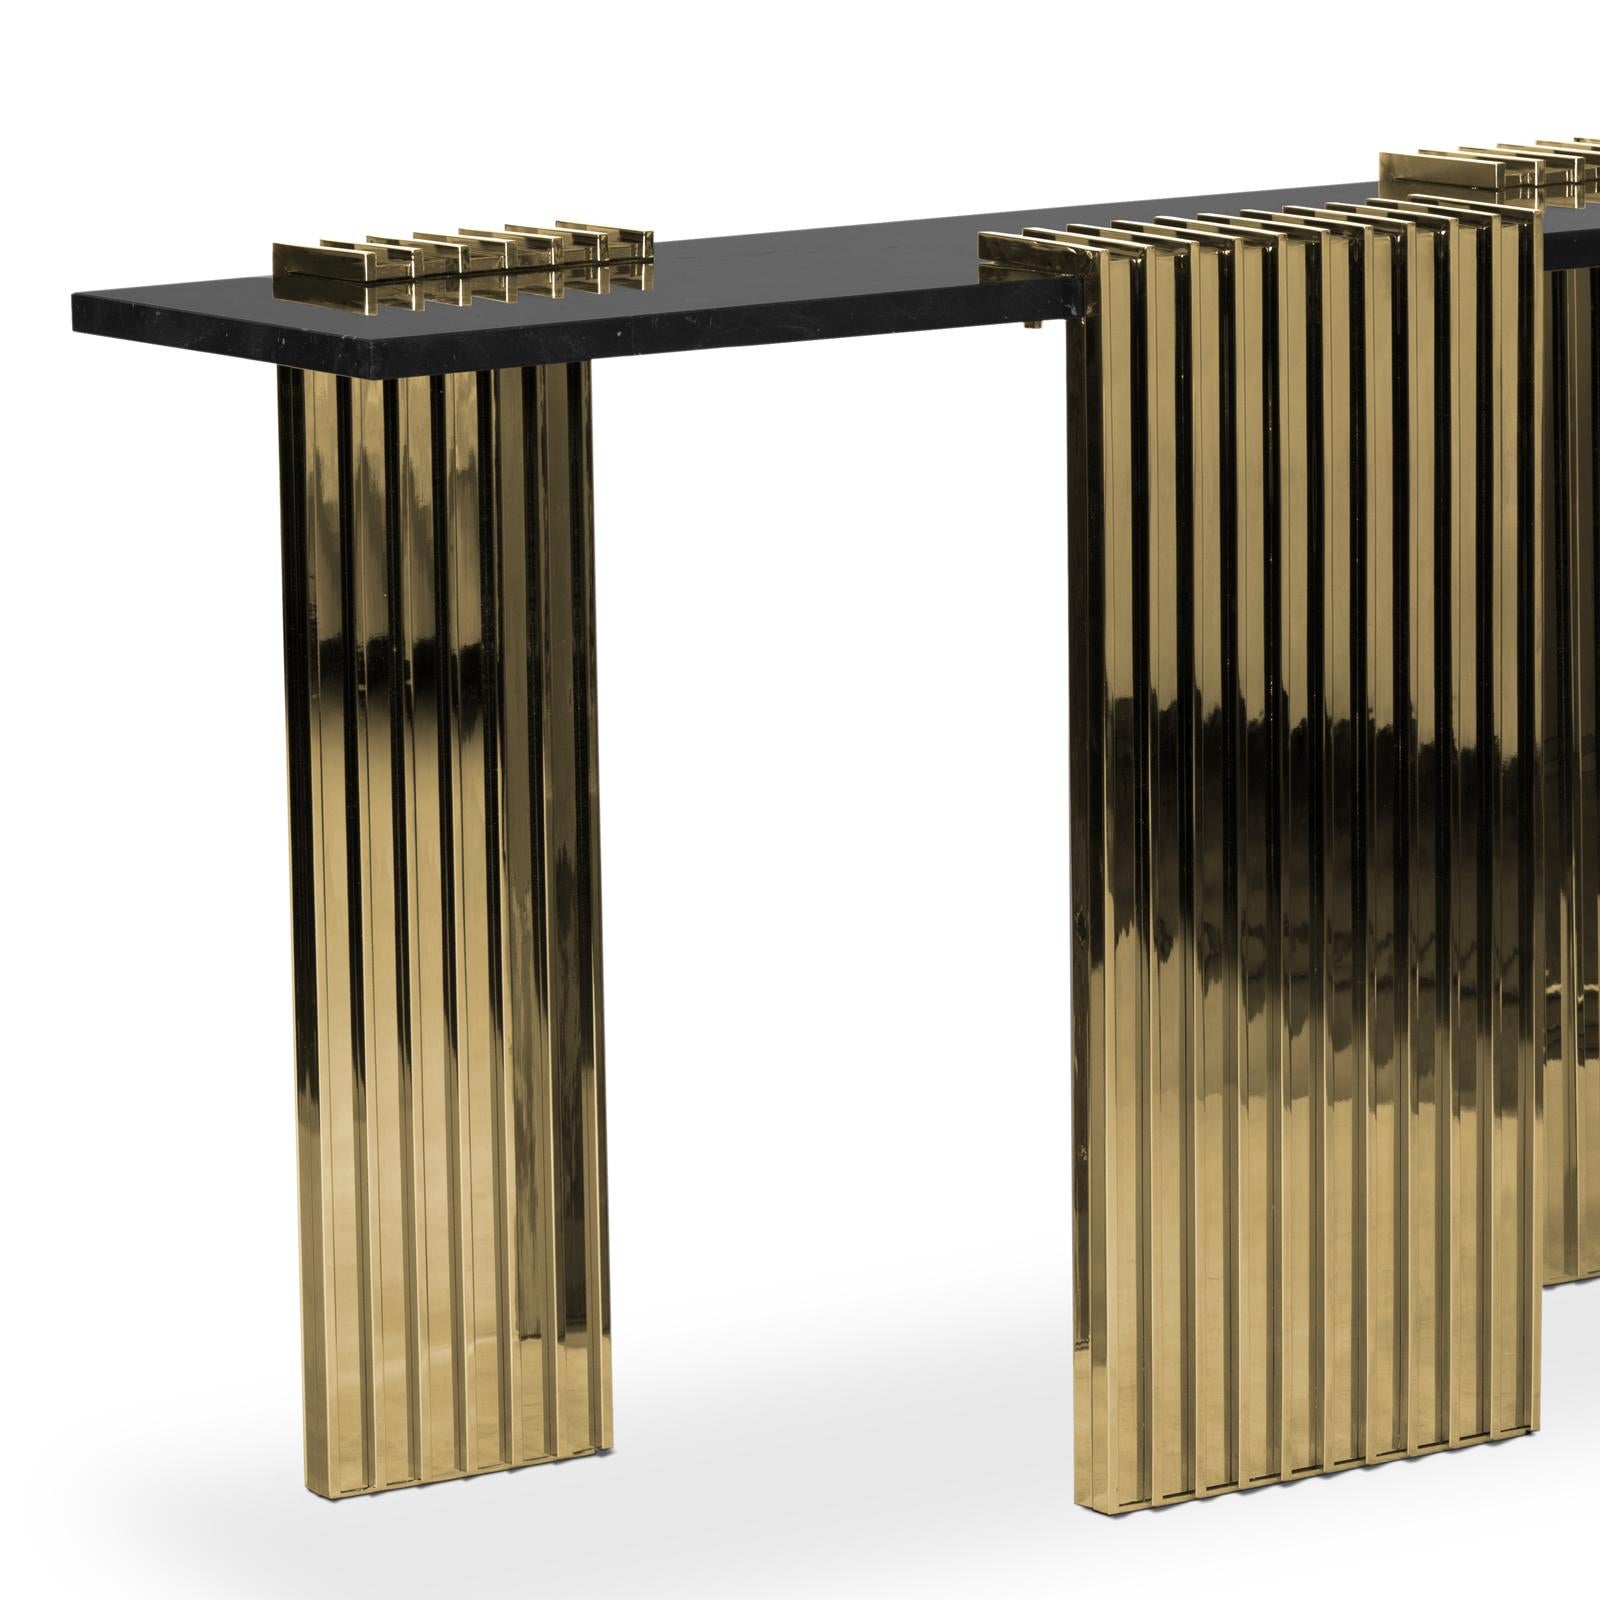 Table console oldies avec base de 3 pieds en
laiton massif poli et plaqué or. Avec plateau en marbre noir.
Également disponible en table basse oldies.